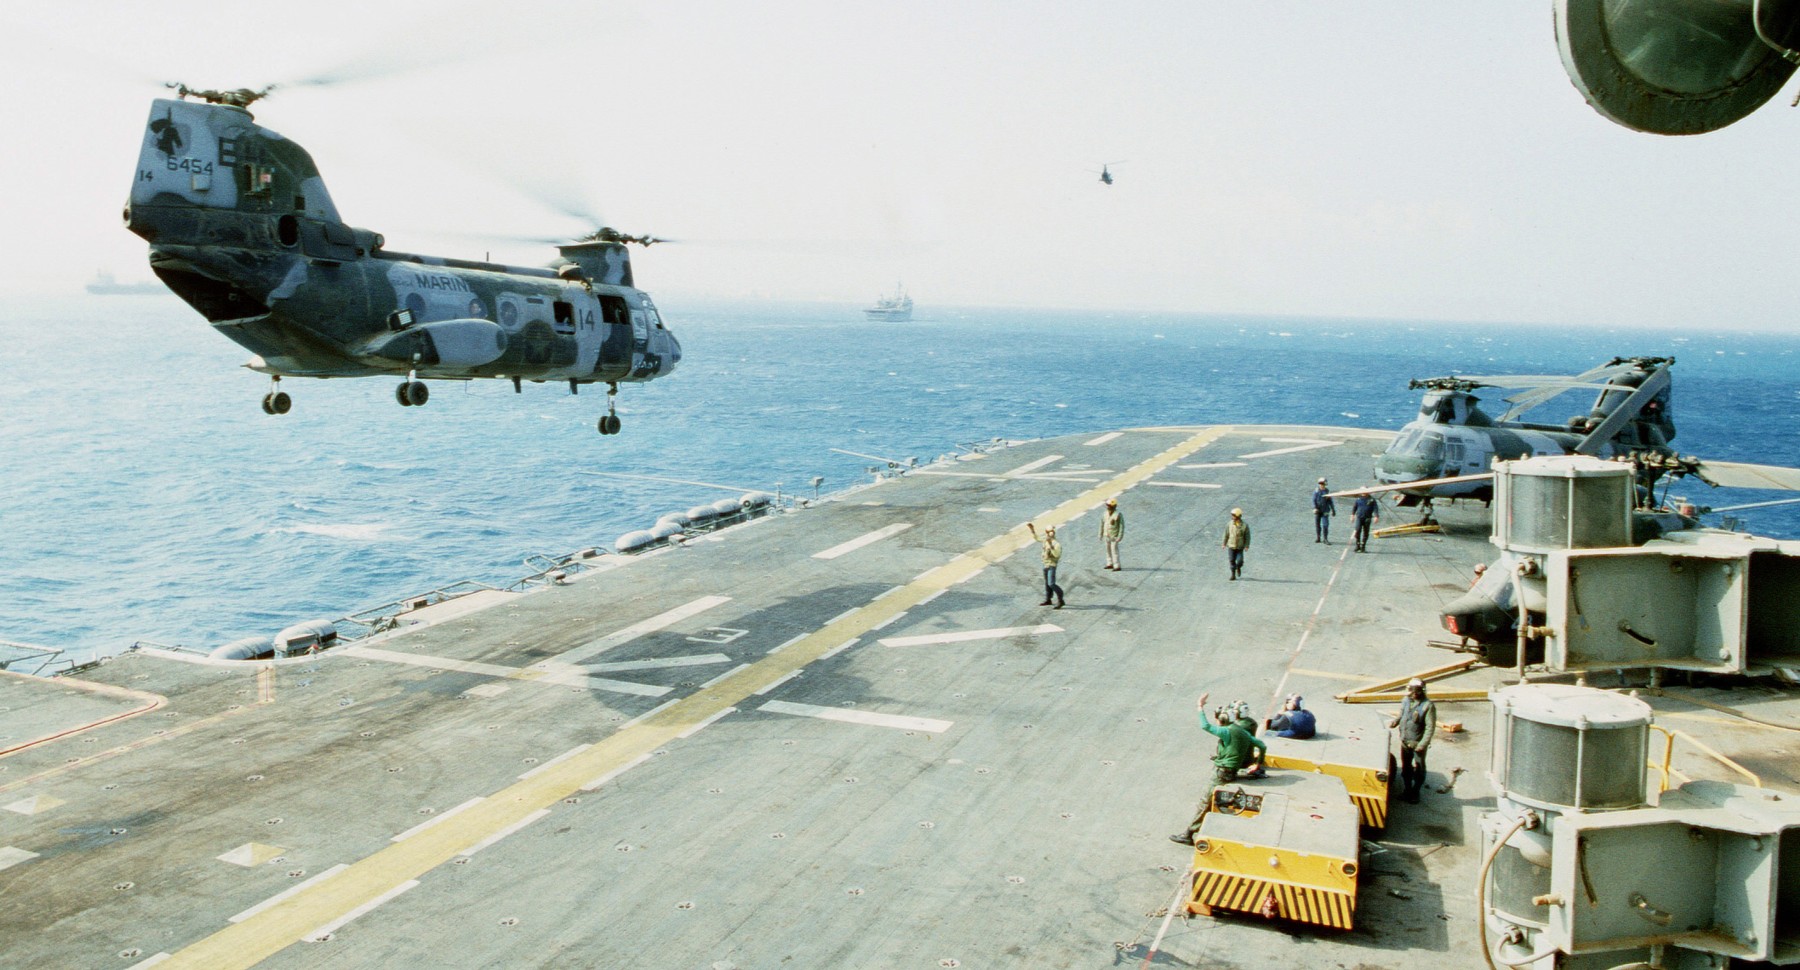 lph-7 uss guadalcanal iwo jima class amphibious assault ship landing platform helicopter us navy 65